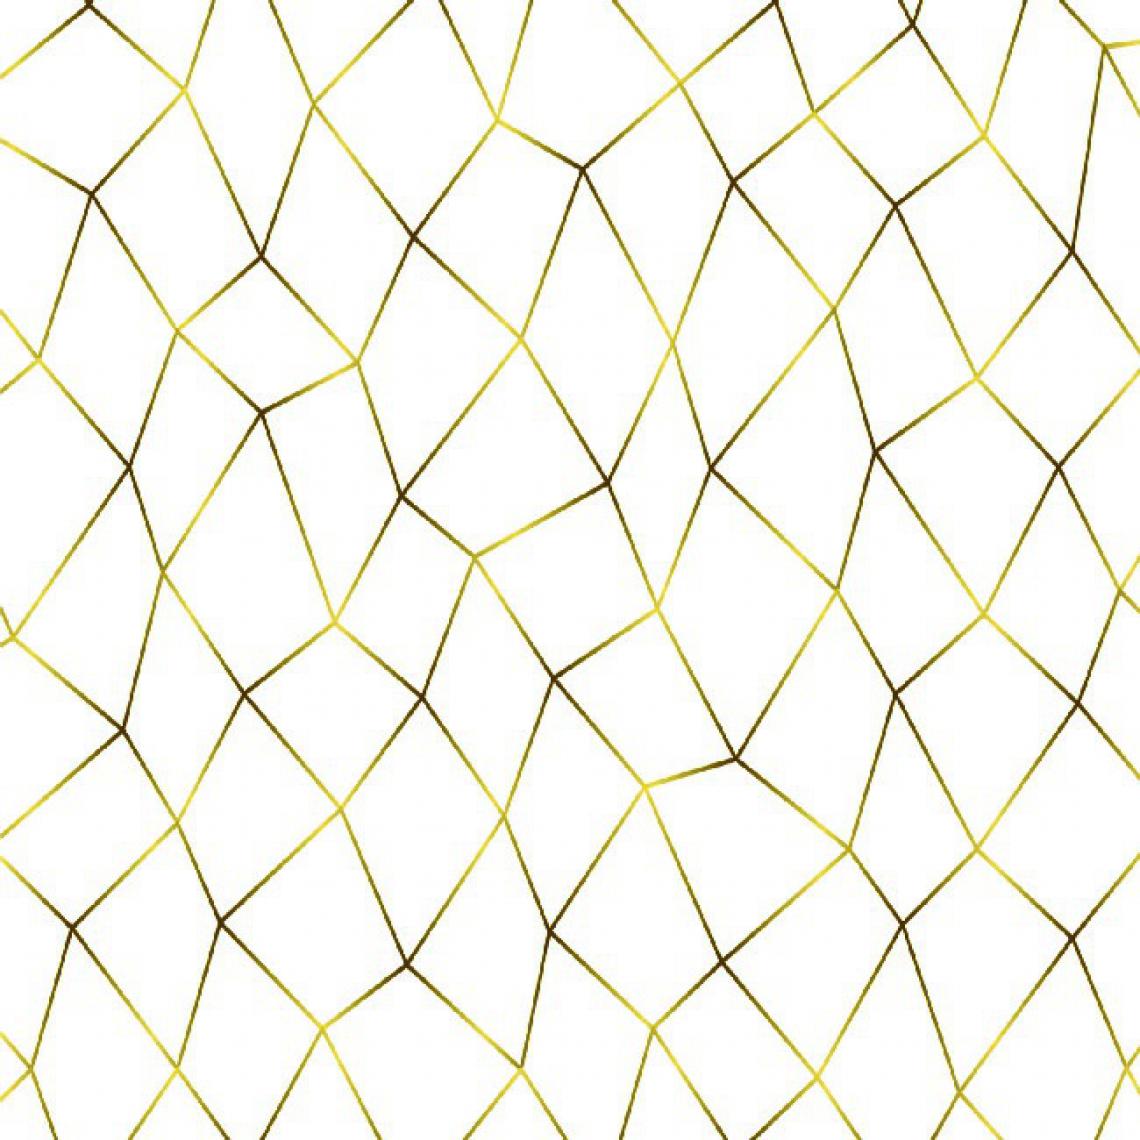 Homemania - HOMEMANIA Tapis Imprimé Modern Choice 4 - Géométrique - Décoration de Maison - Antidérapant - Pour Salon, séjour, chambre à coucher - Multicolore en Polyester, Coton, 120 x 180 cm - Tapis